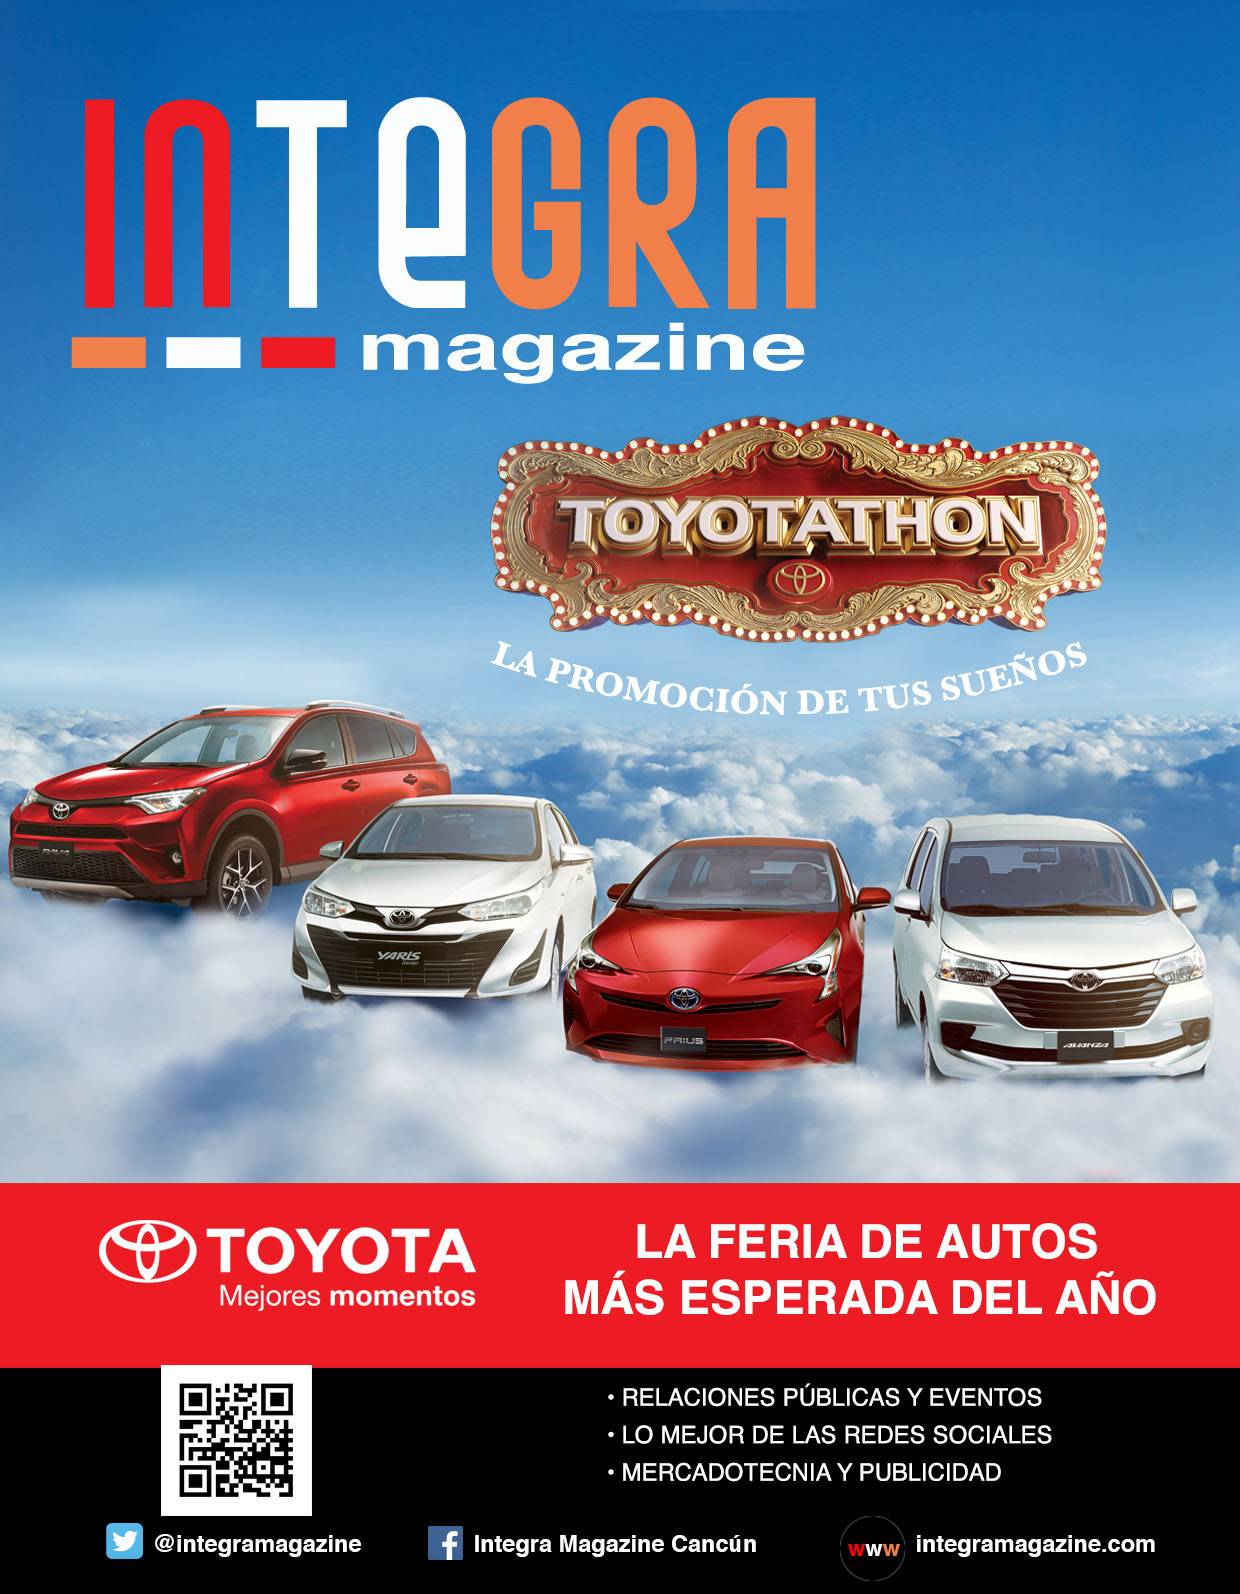 Toyotathon – La feria de autos más esperada del año